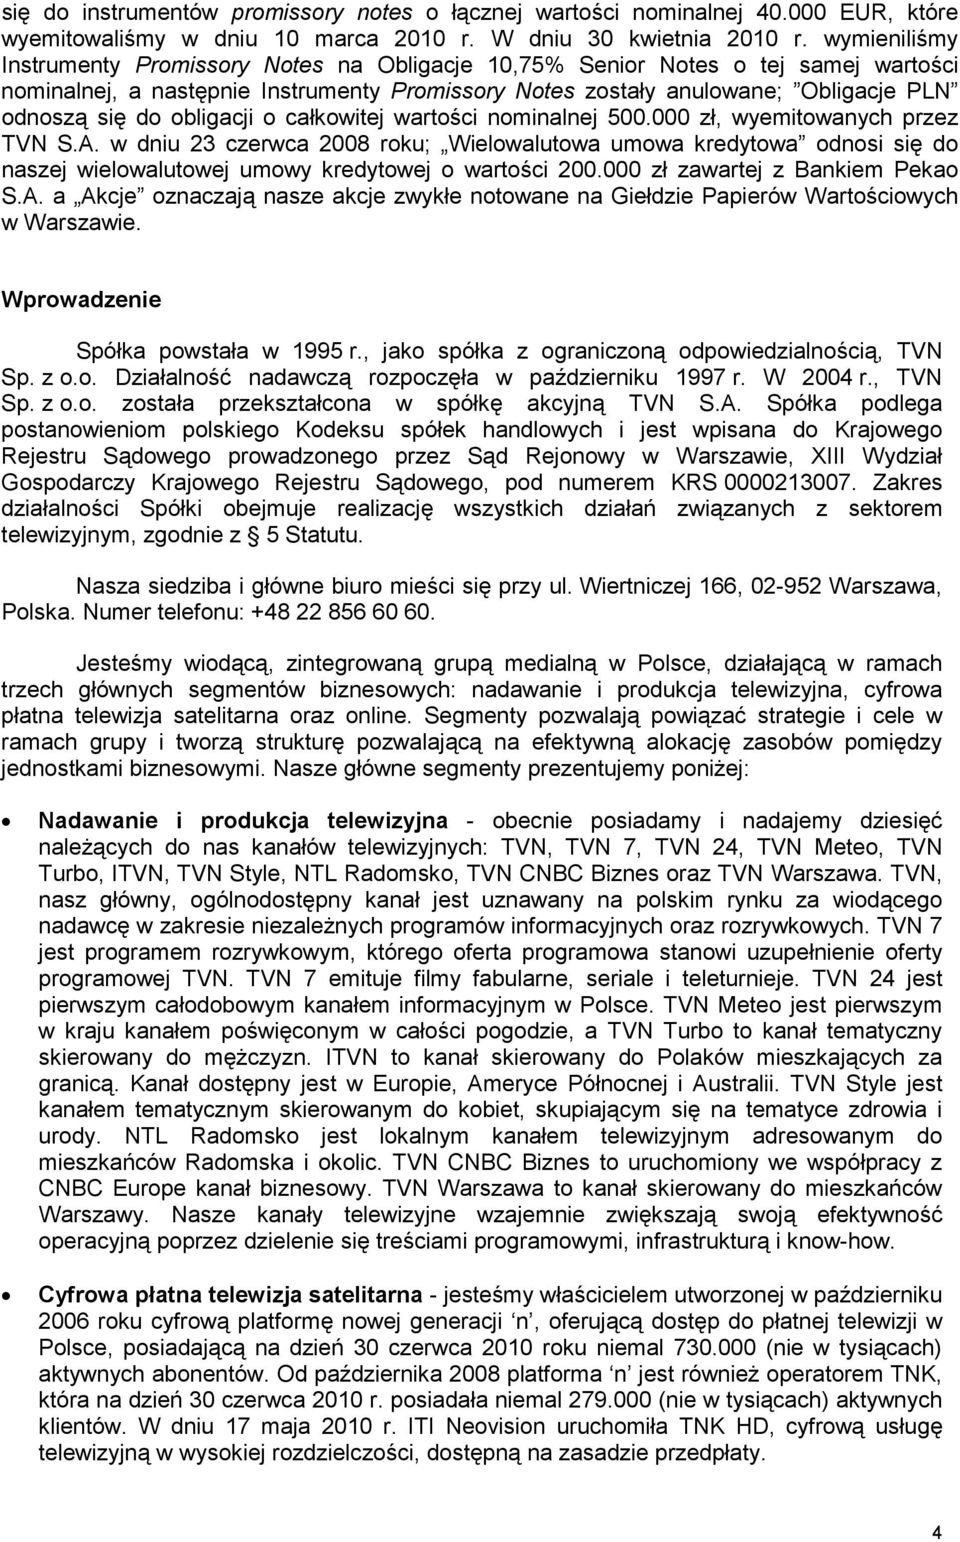 obligacji o całkowitej wartości nominalnej 500.000 zł, wyemitowanych przez TVN S.A.